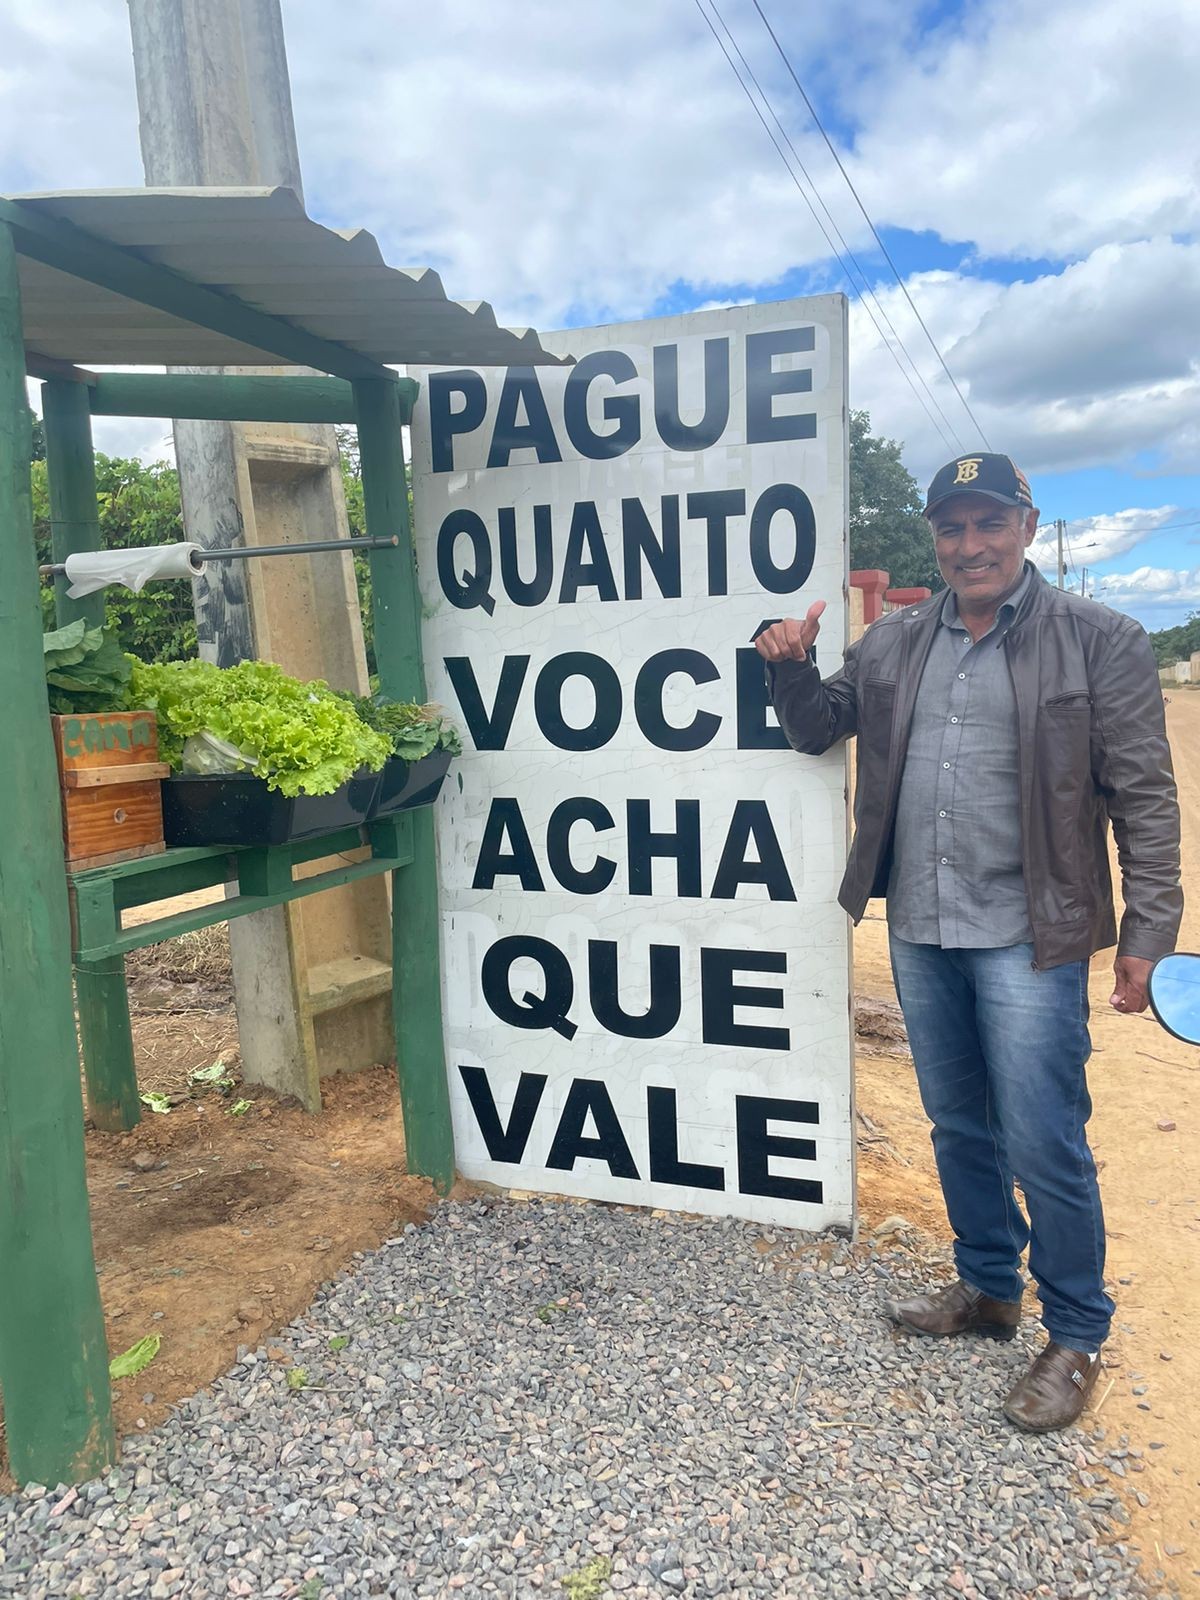 Pague se puder e quanto quiser: comerciante oferece hortaliças às margens de estrada na Bahia